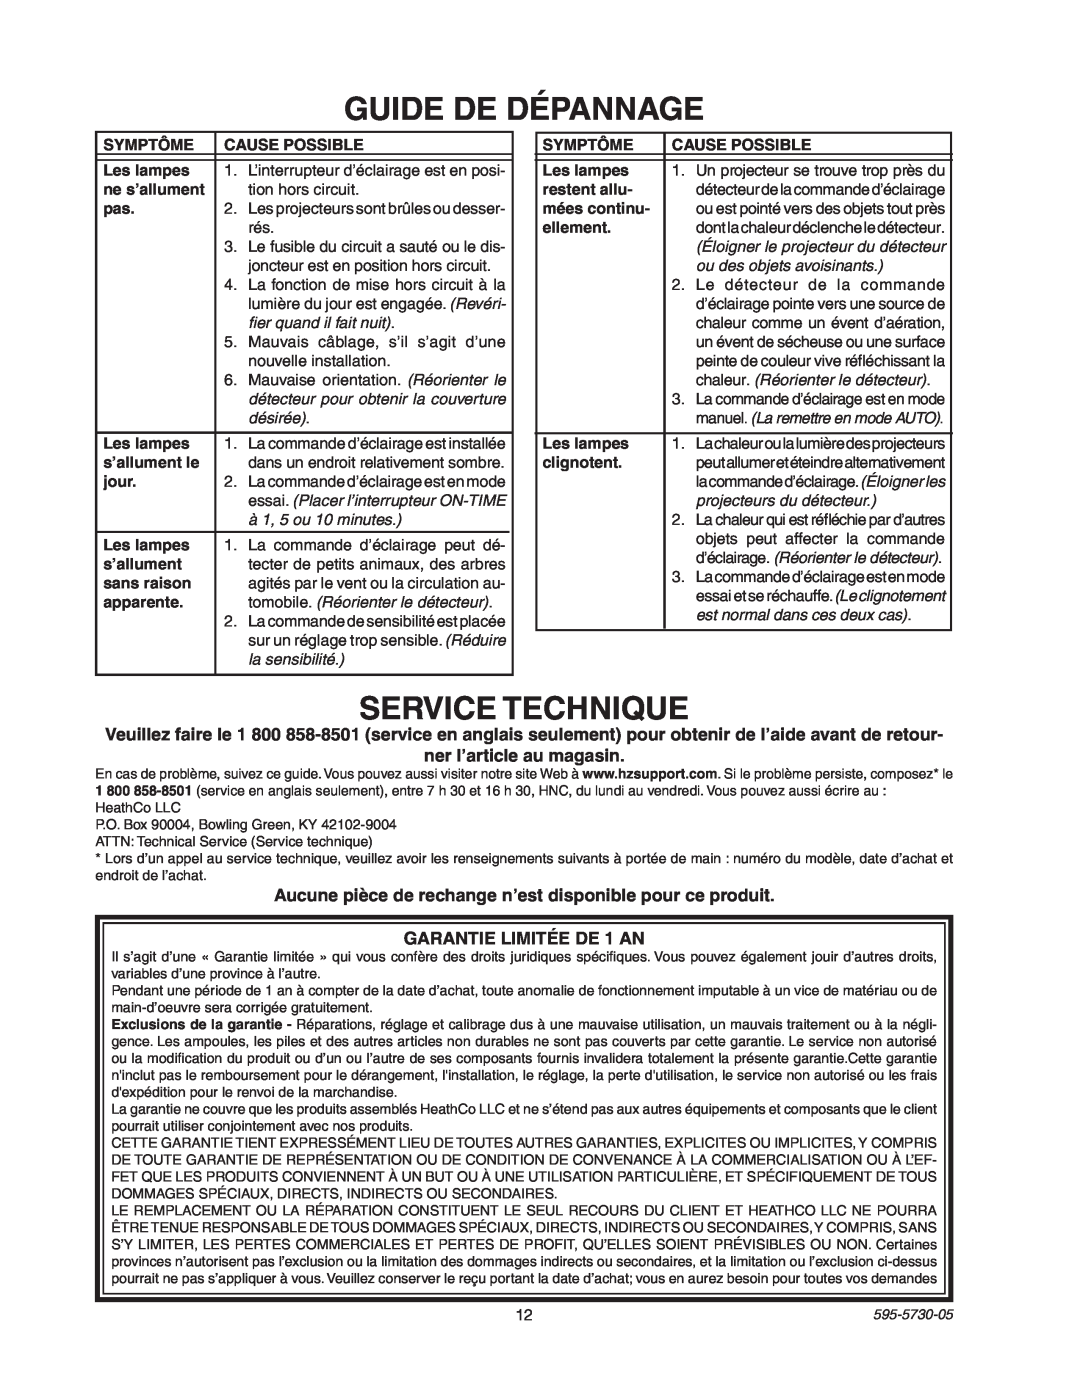 Heath Zenith SL-5514 manual Guide De Dépannage, Service Technique, ner l’article au magasin, GARANTIE LIMITÉE DE 1 AN 